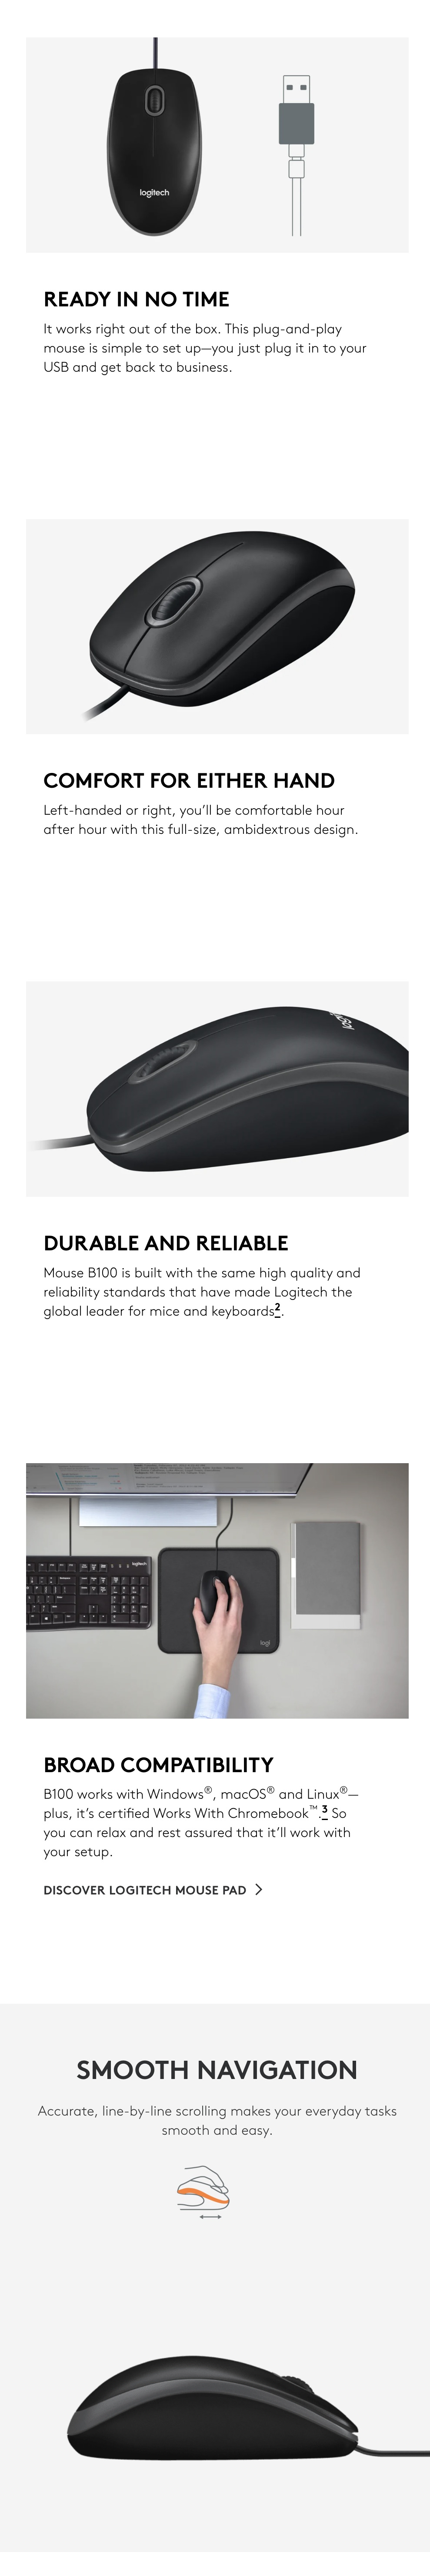 Logitech-Business-B100-Optical-USB-Mouse-Description